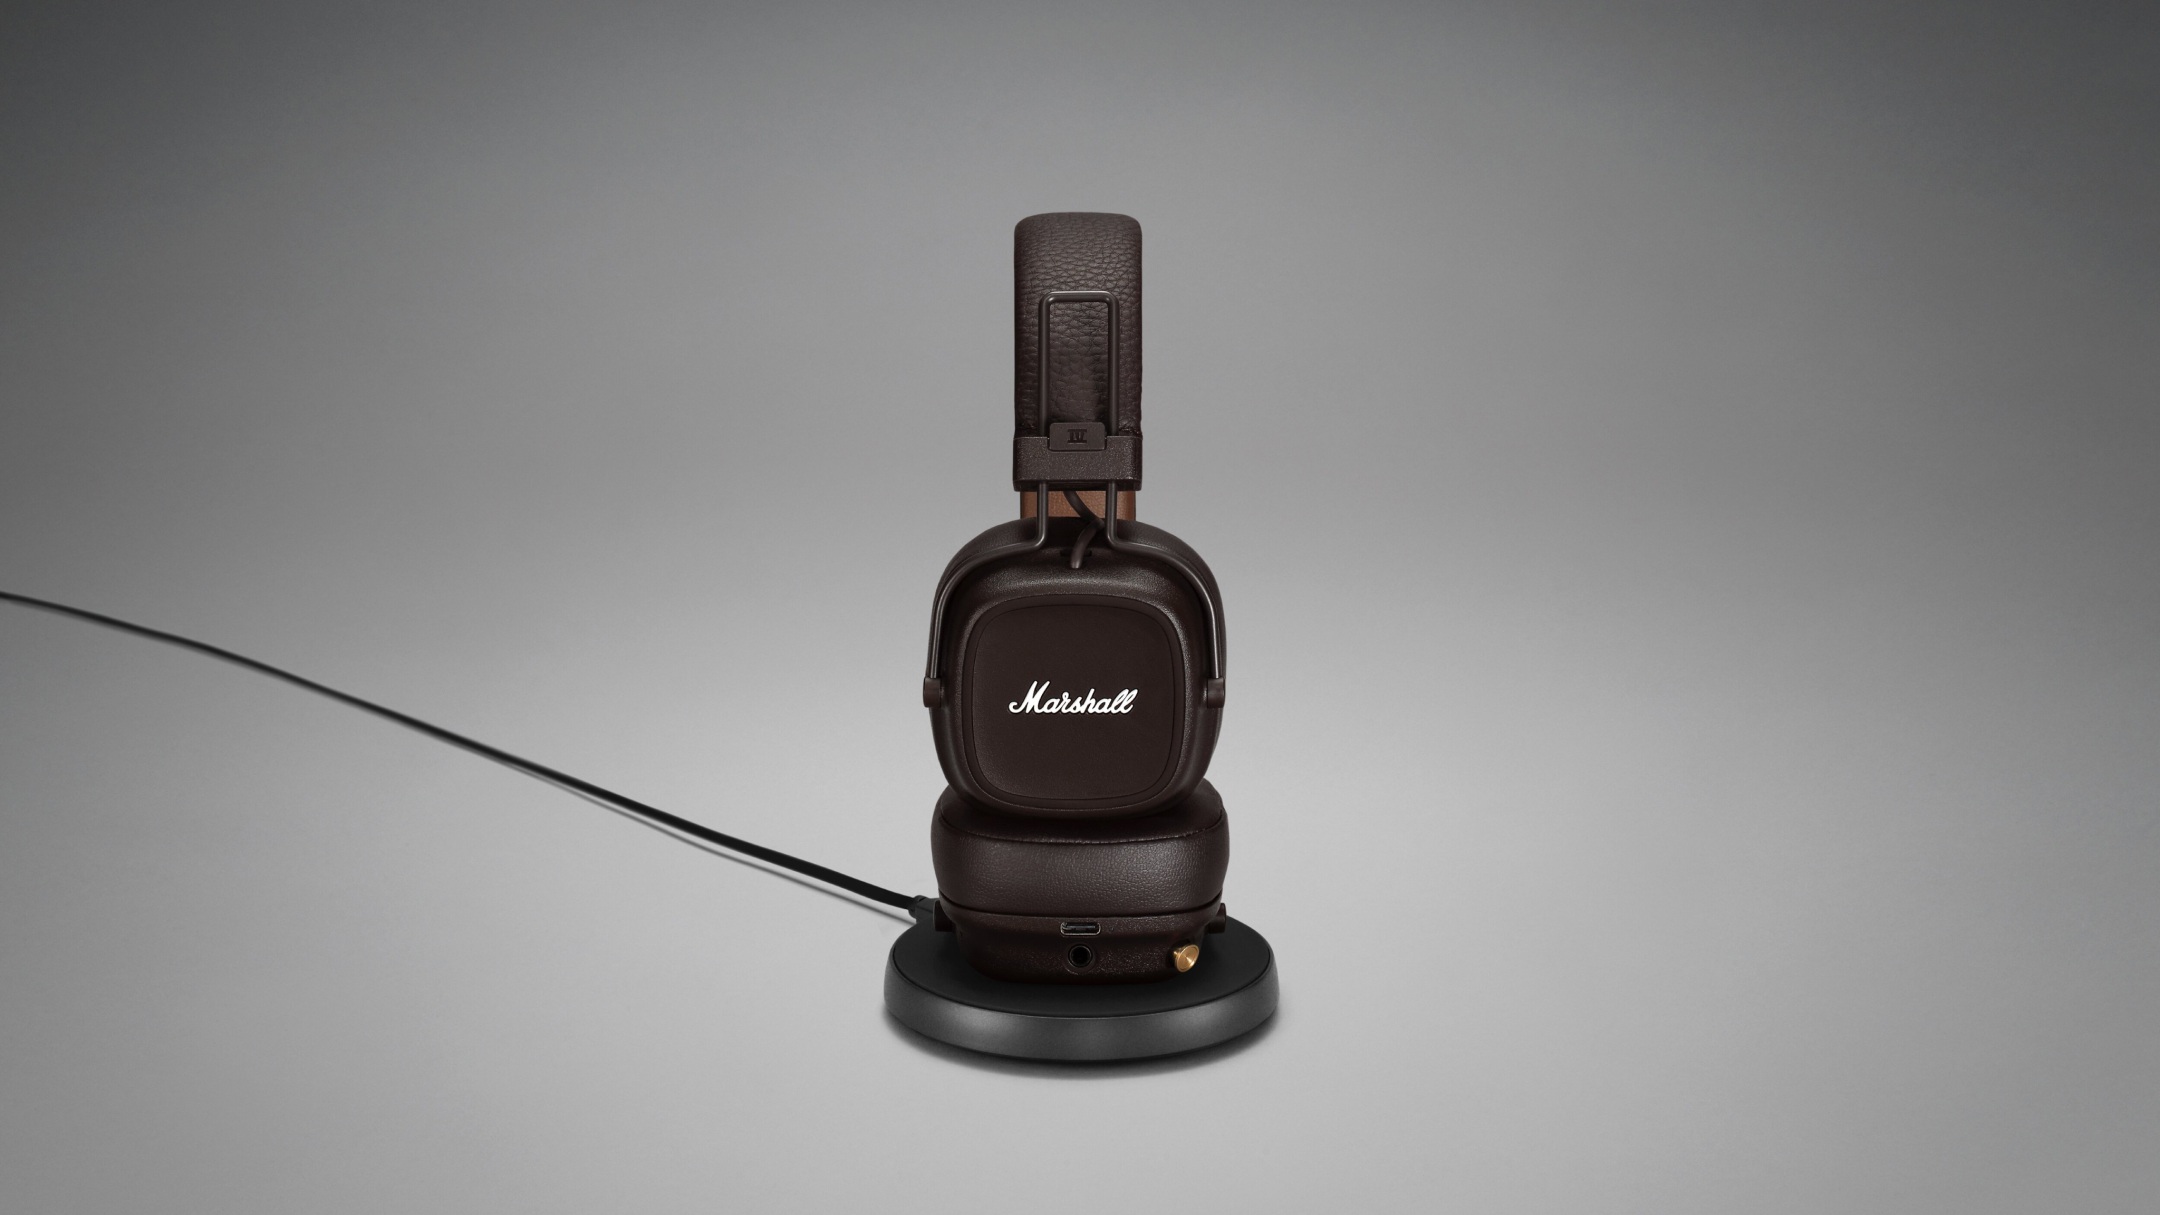 Marshall MAJOR IV headphones displayed on a sleek black stand.